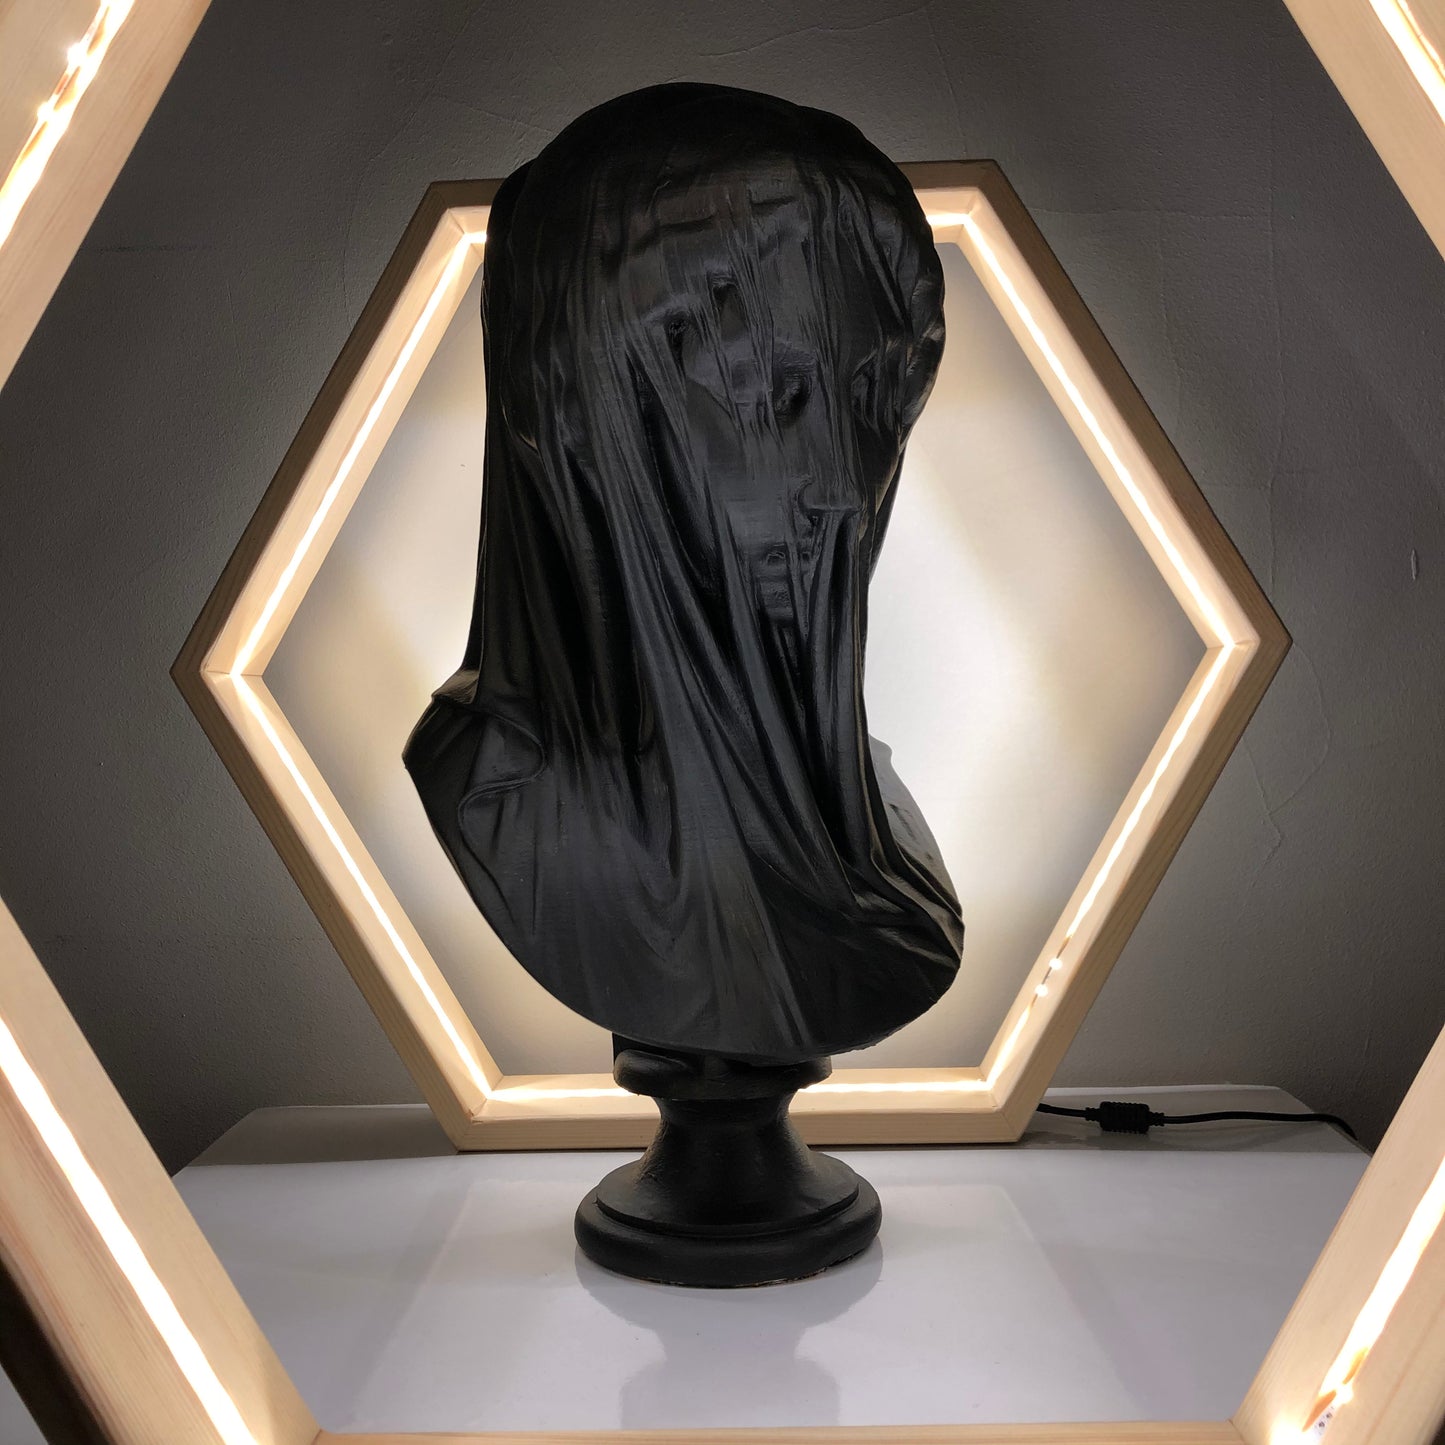 Mariam 'Black' Pop Art Sculpture, Modern Home Decor